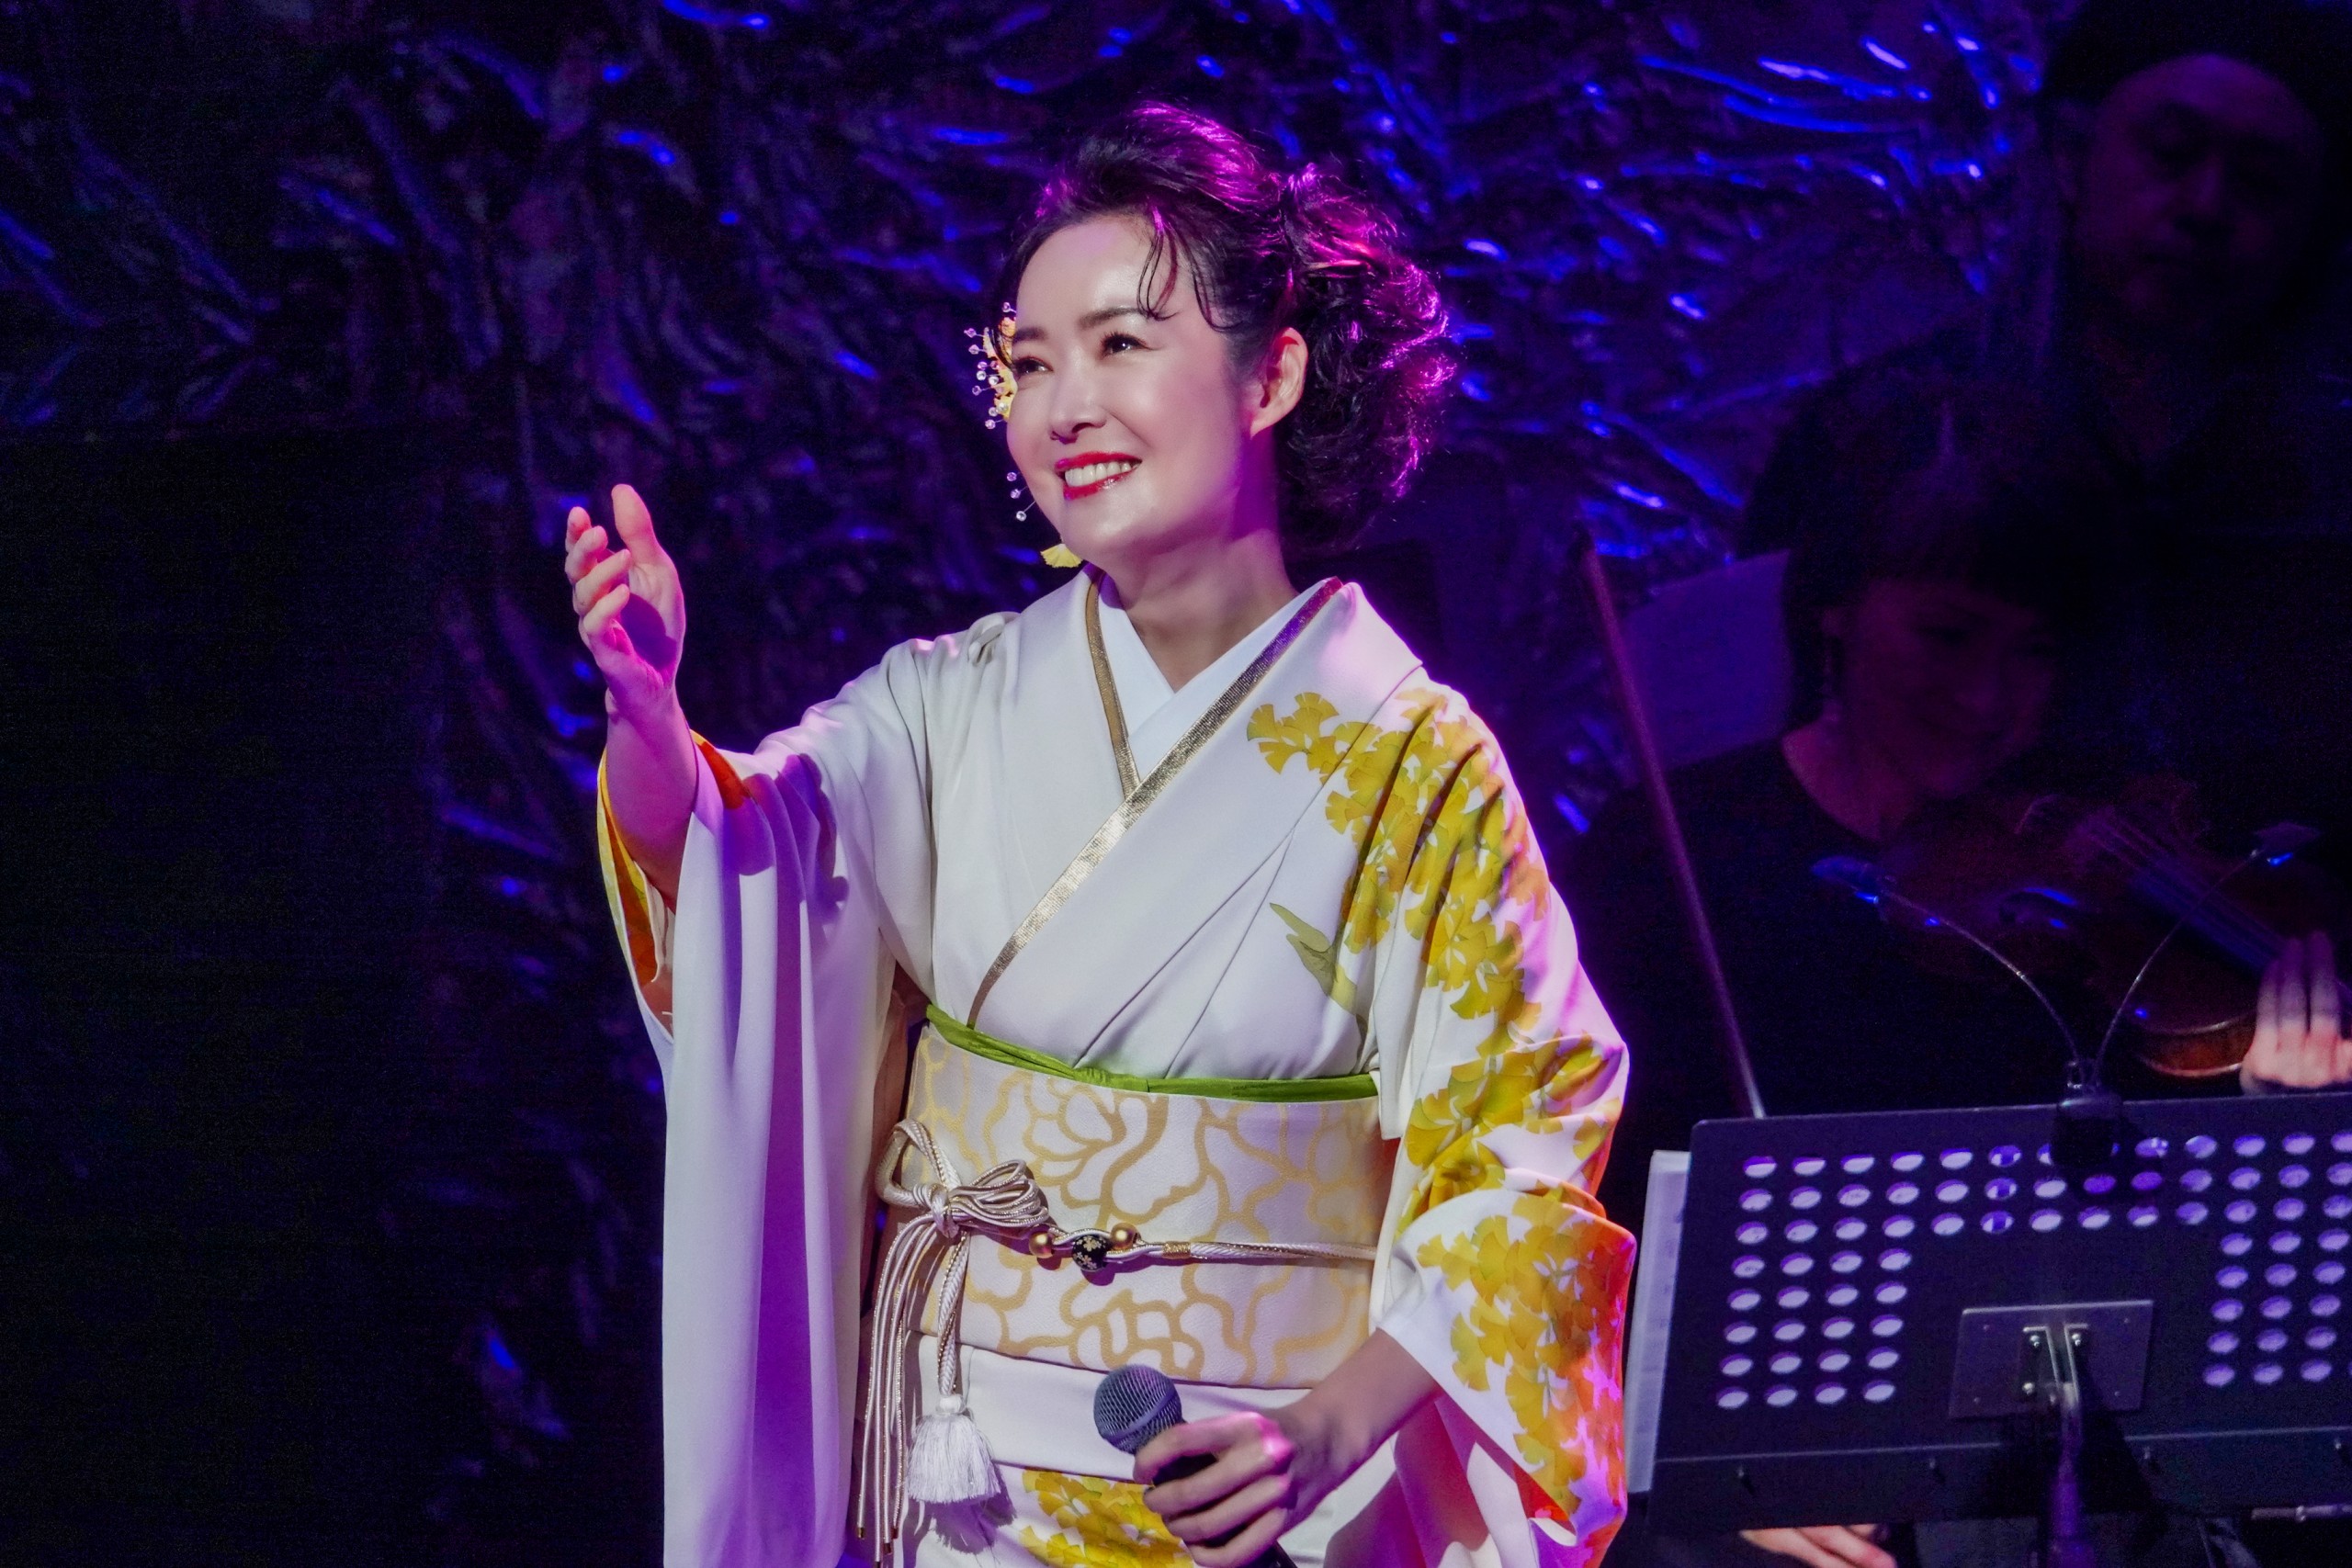 田川寿美がデビュー30周年記念コンサートで見せた笑顔と涙。「ありがとう、大好き」「皆様にお会いできてよかったあ」 - オトカゼ 〜音楽の風〜